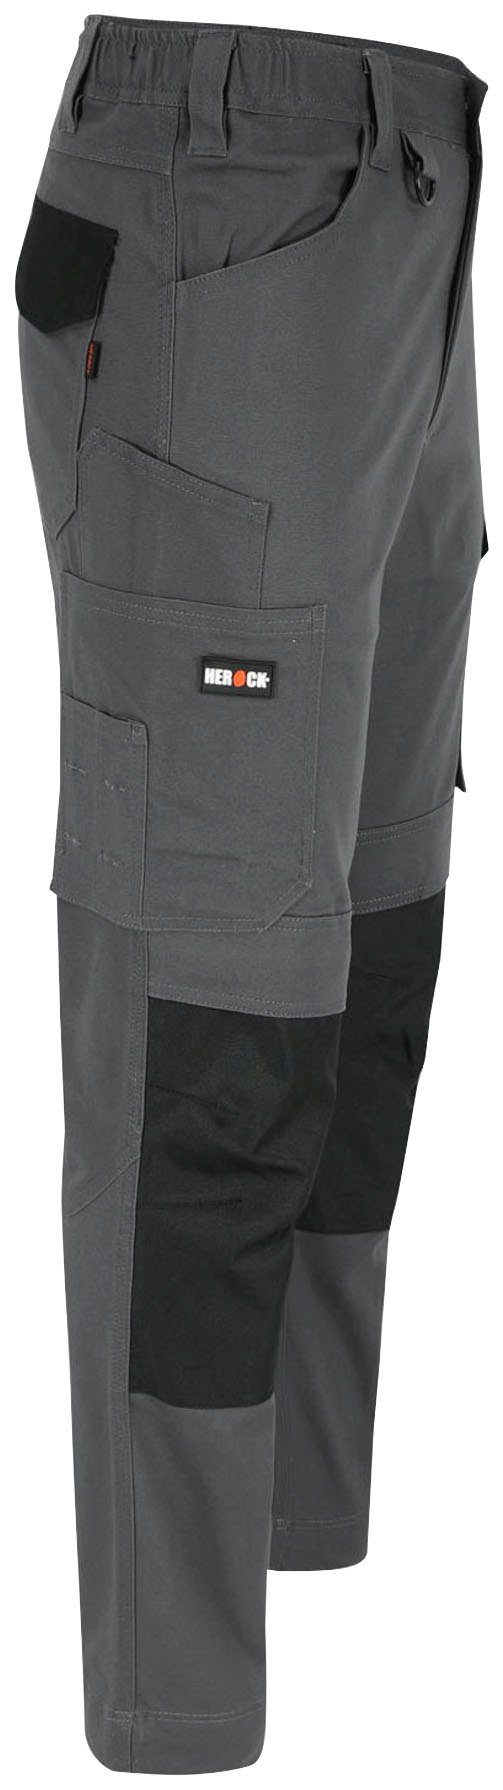 Herock Arbeitshose DERO Slim Fit Passform, 2-Wege-Stretch, grau Multi-Pocket, wasserabweisend